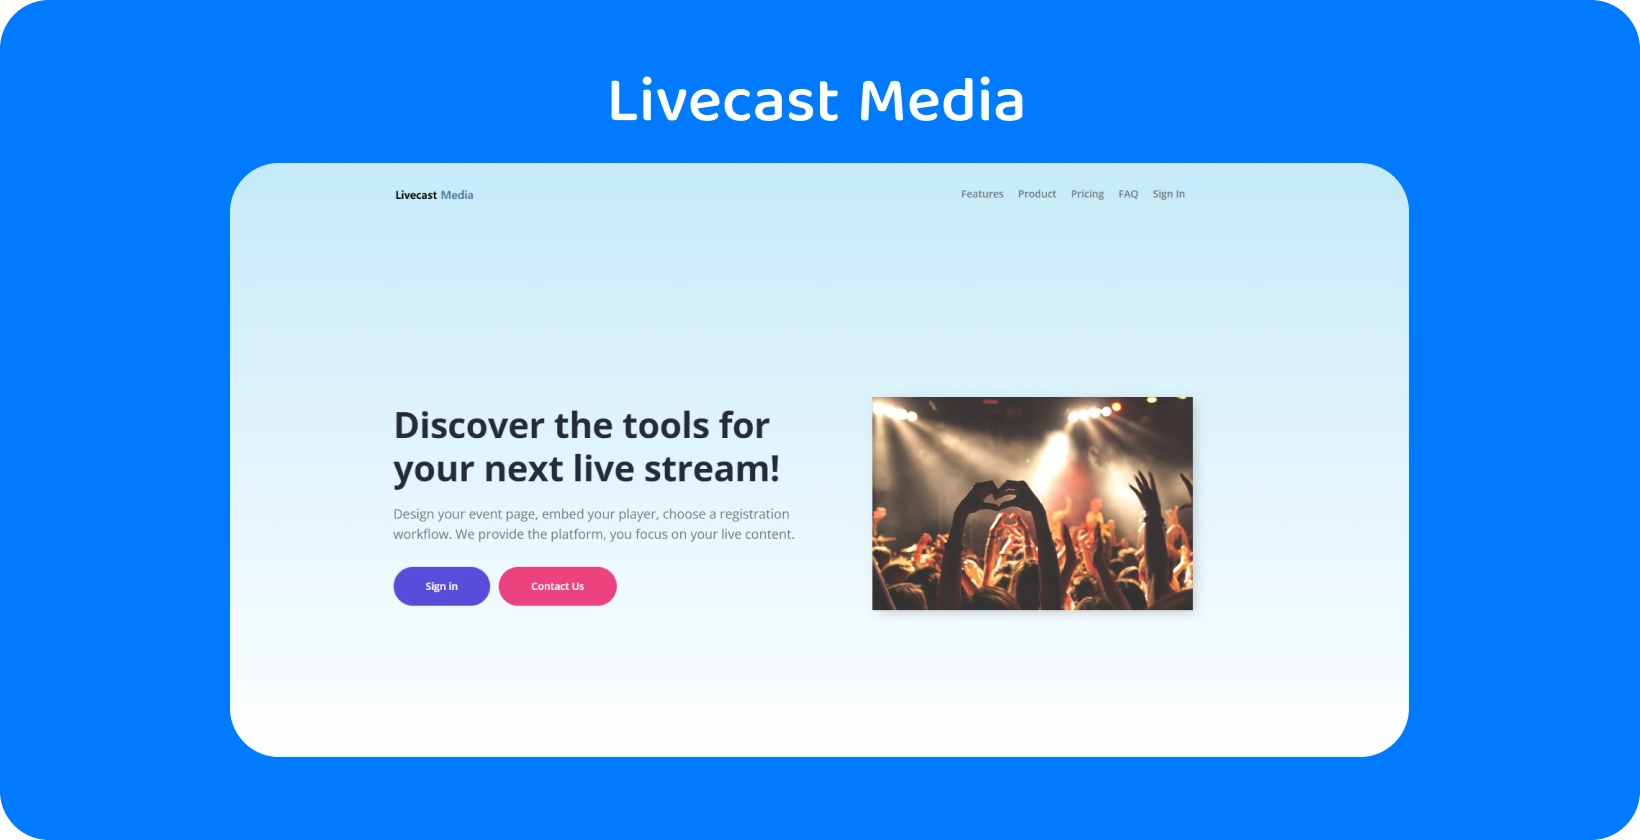 Uključite se sa gledaocima koristeći alatke za protok Livecast Media, idealne za kreiranje nezaboravnih događaja uživo.